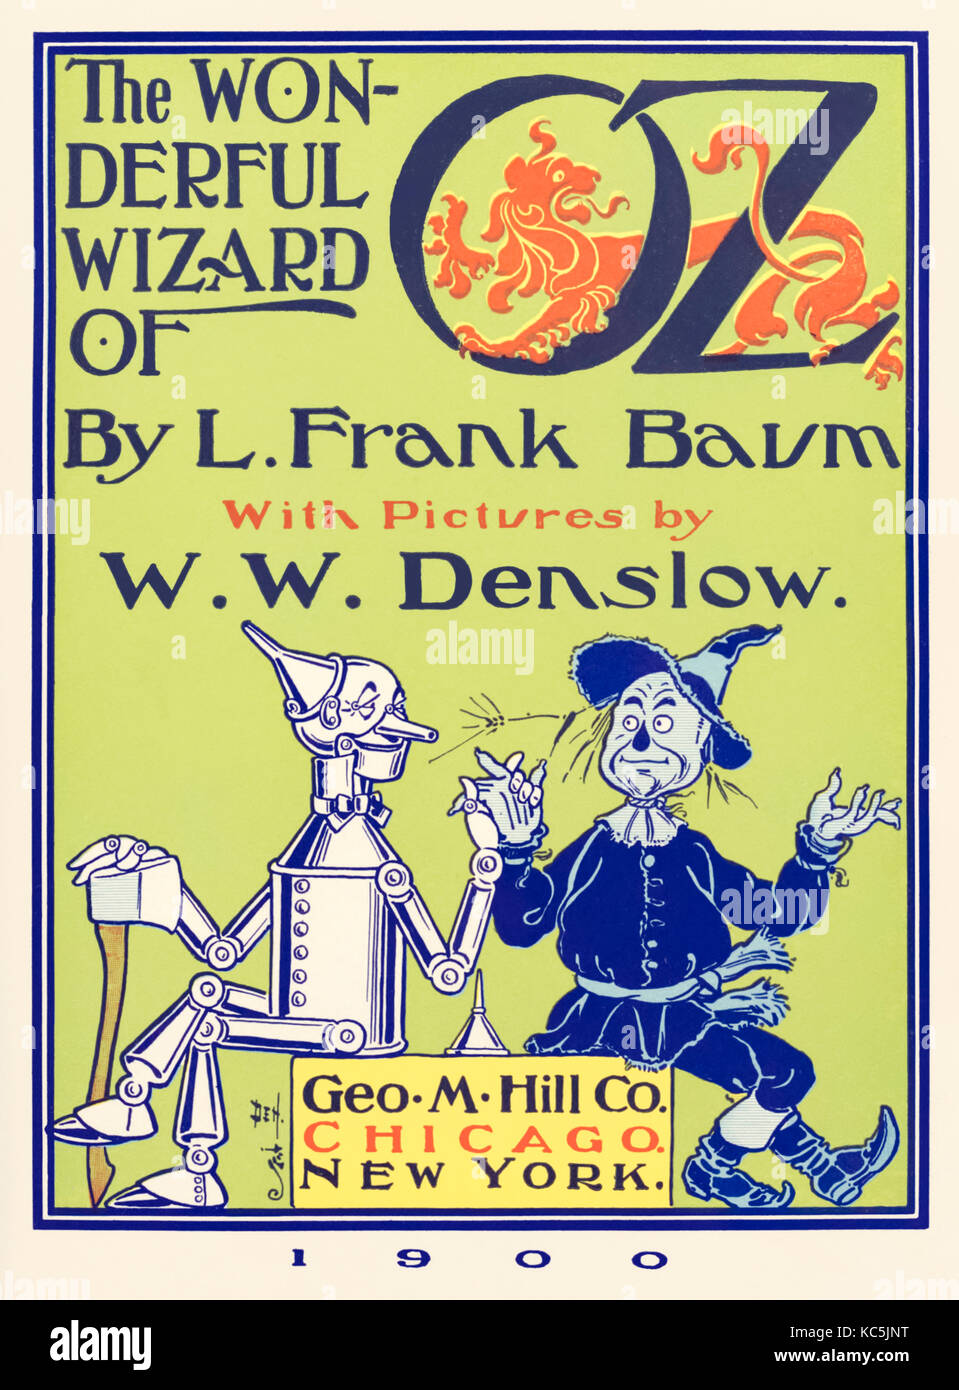 Page de titre de "The Wonderful Wizard of Oz' par L. Frank Baum (1856-1919) avec des photos de W. W. Denslow (1856-1915), avec l'homme de bidon et de l'épouvantail. Ensemble complet d'une page entière à partir de la première édition à suivre en octobre 2017. Voir plus d'informations ci-dessous. Banque D'Images